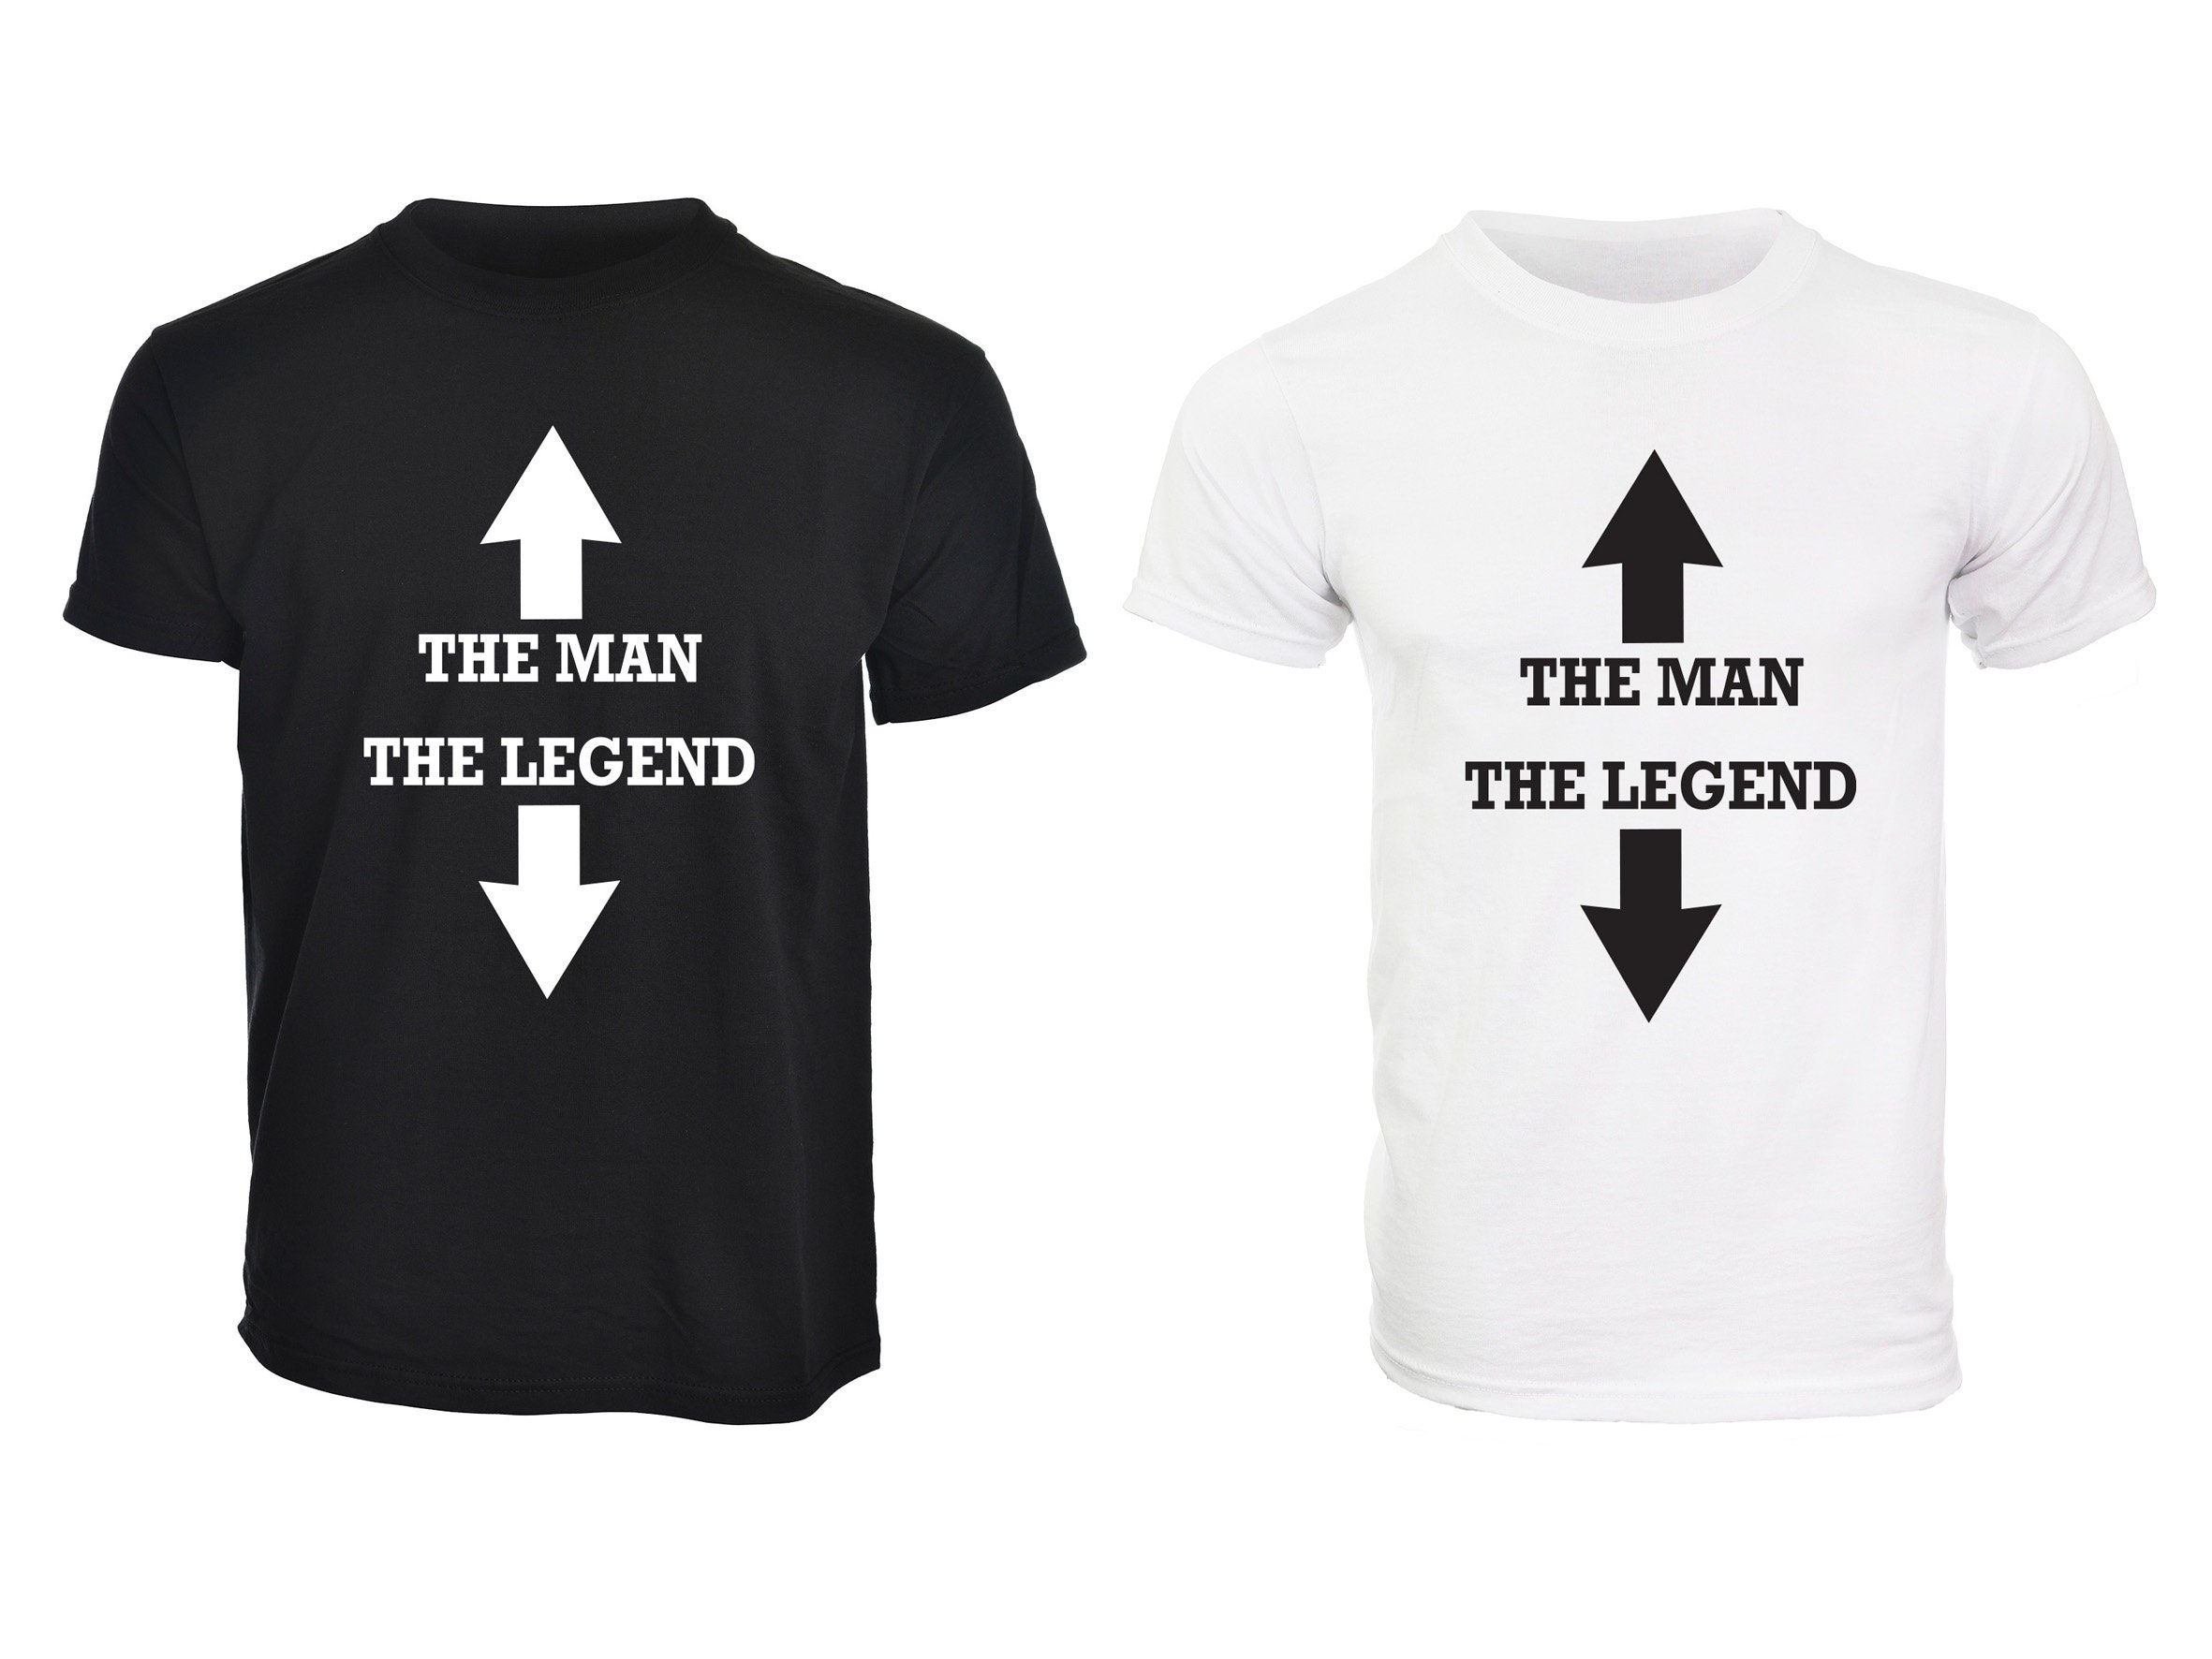 uddøde Immunitet Telemacos Mens Funny 'the Man the Legend' Joke T-shirts Top - Etsy